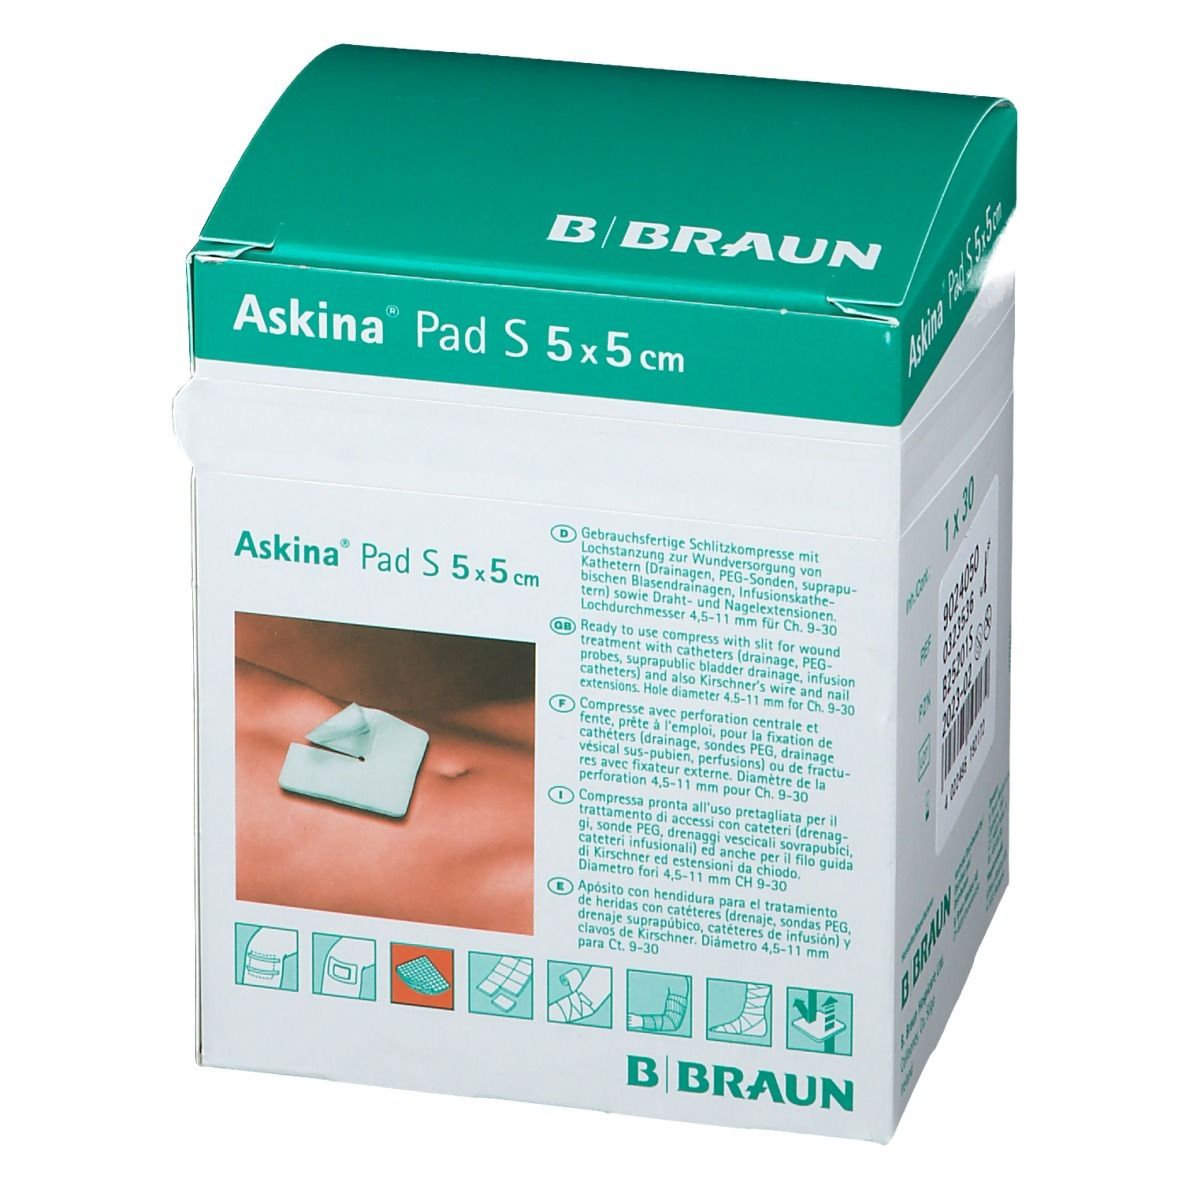 Askina® Pad S 5x5cm